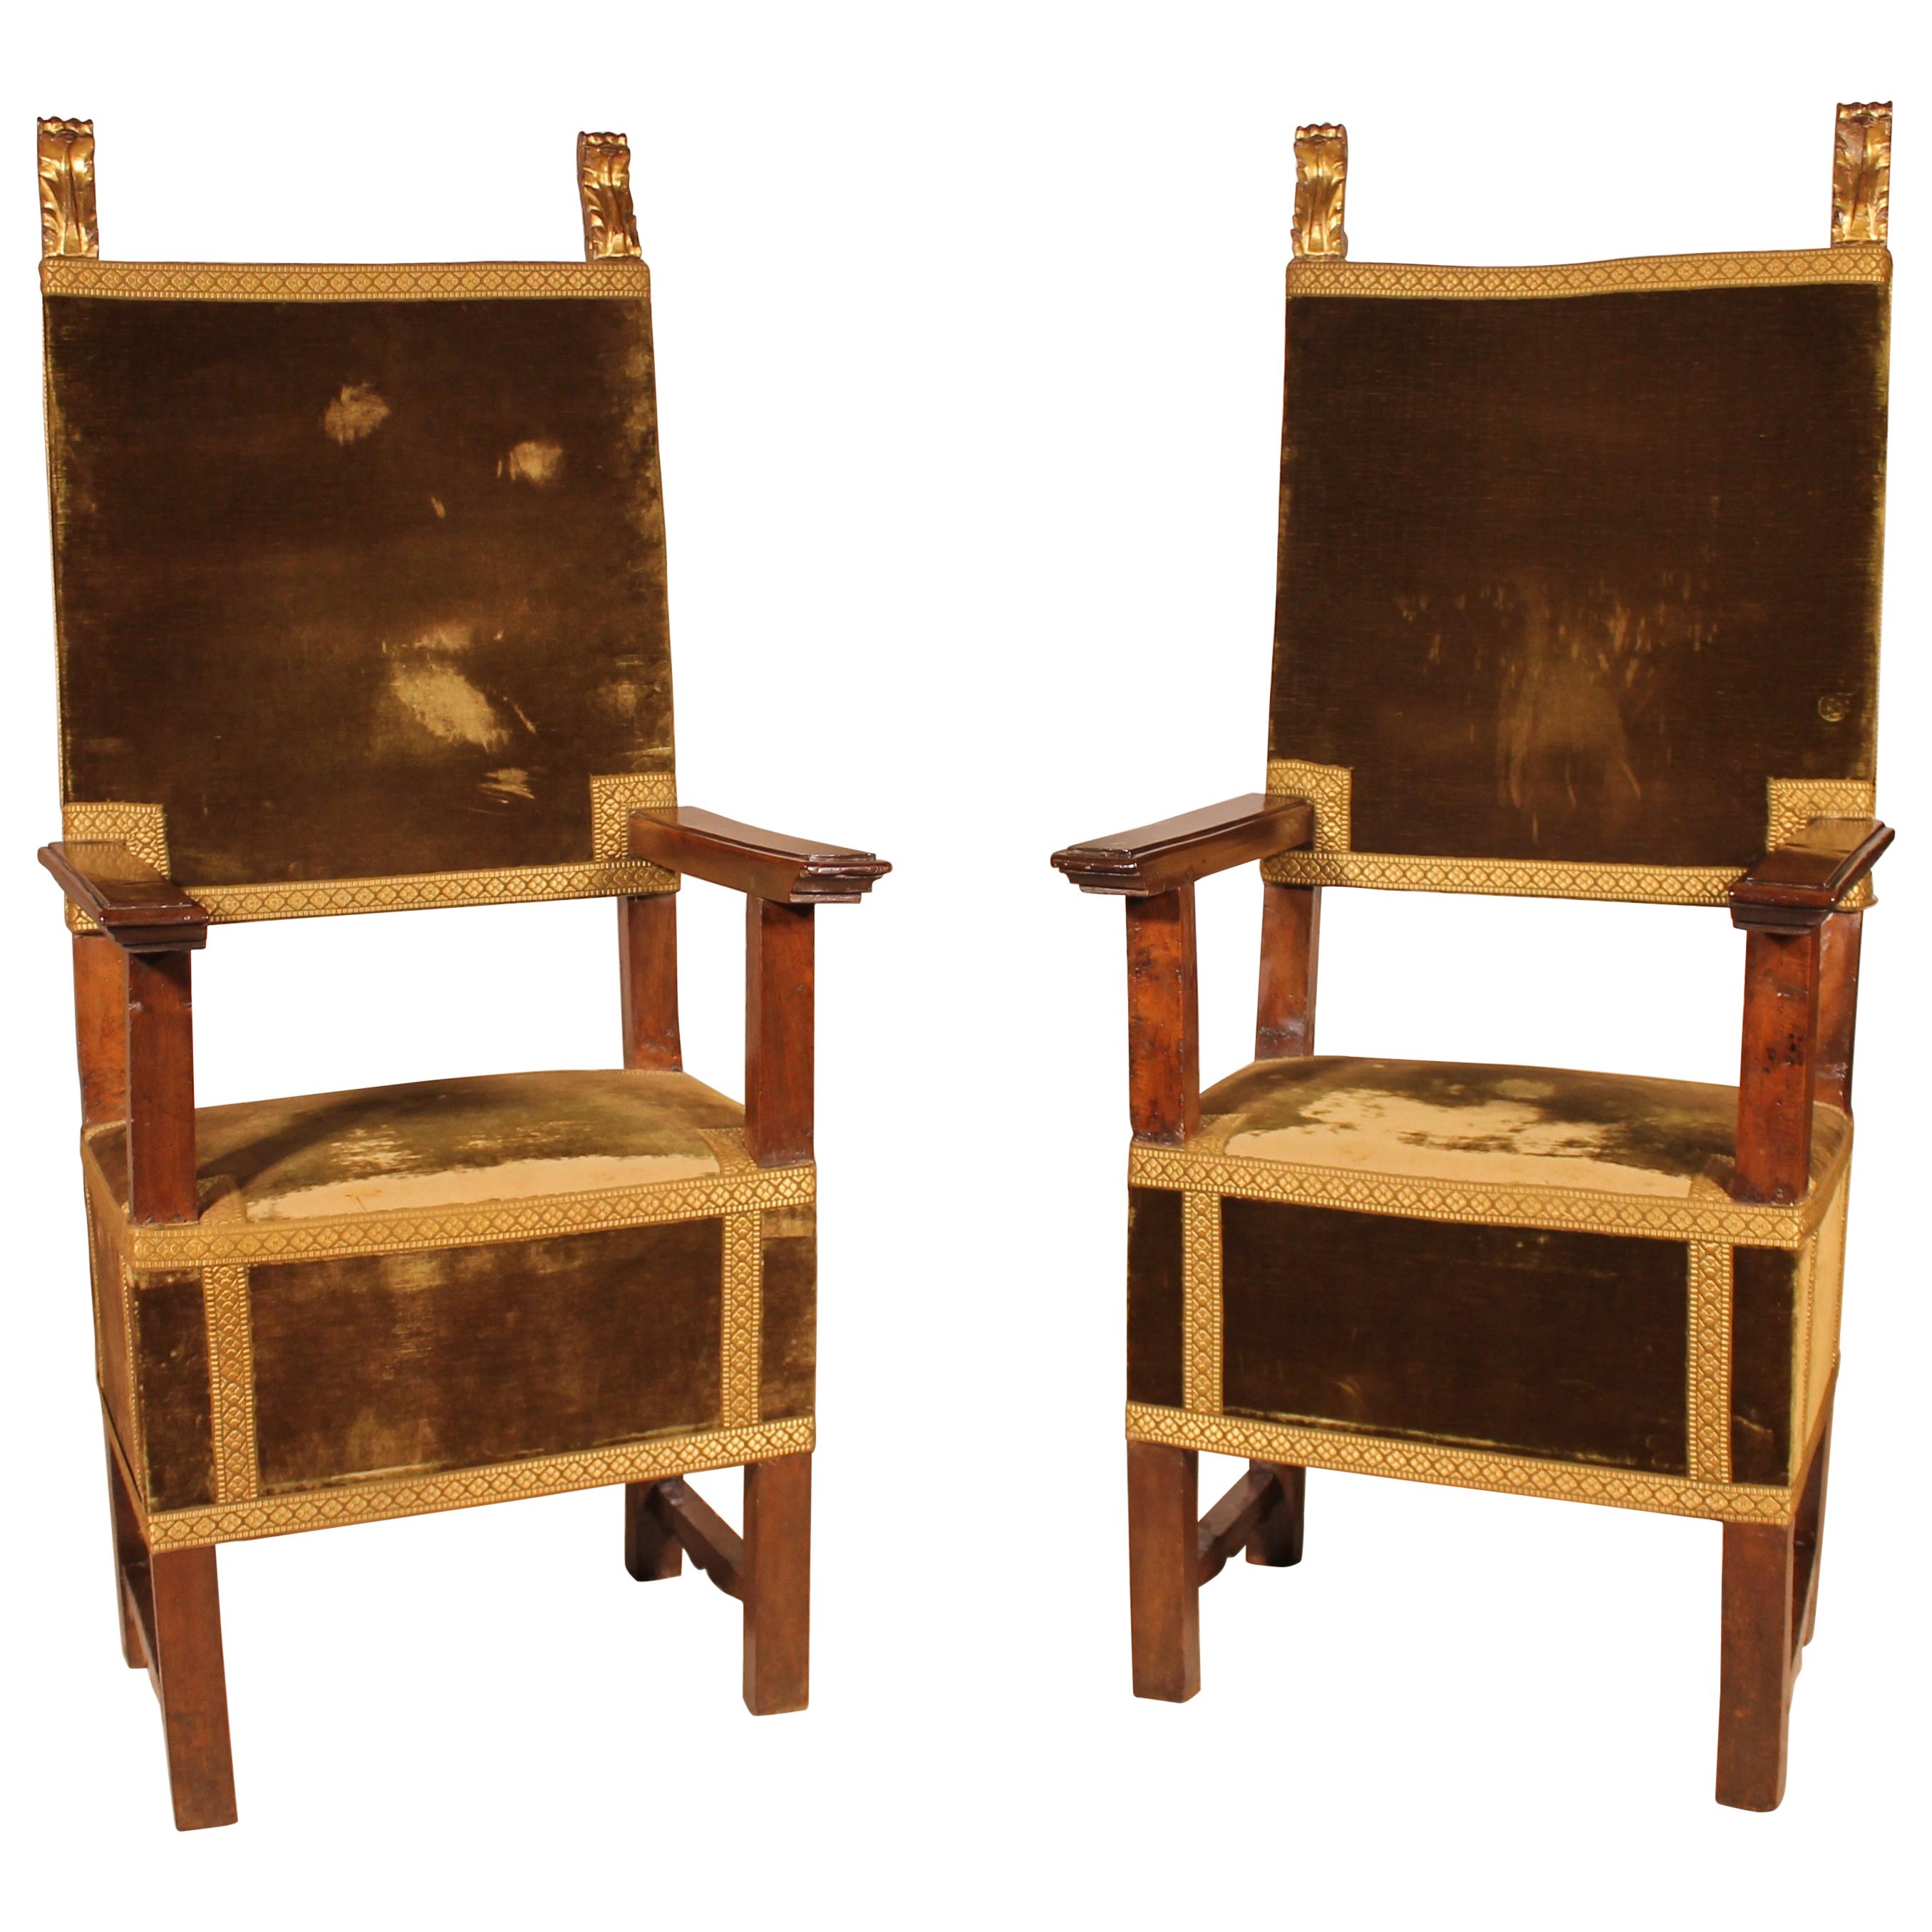 Paar italienische Sessel aus Nussbaum um 1600 - Renaissancezeit